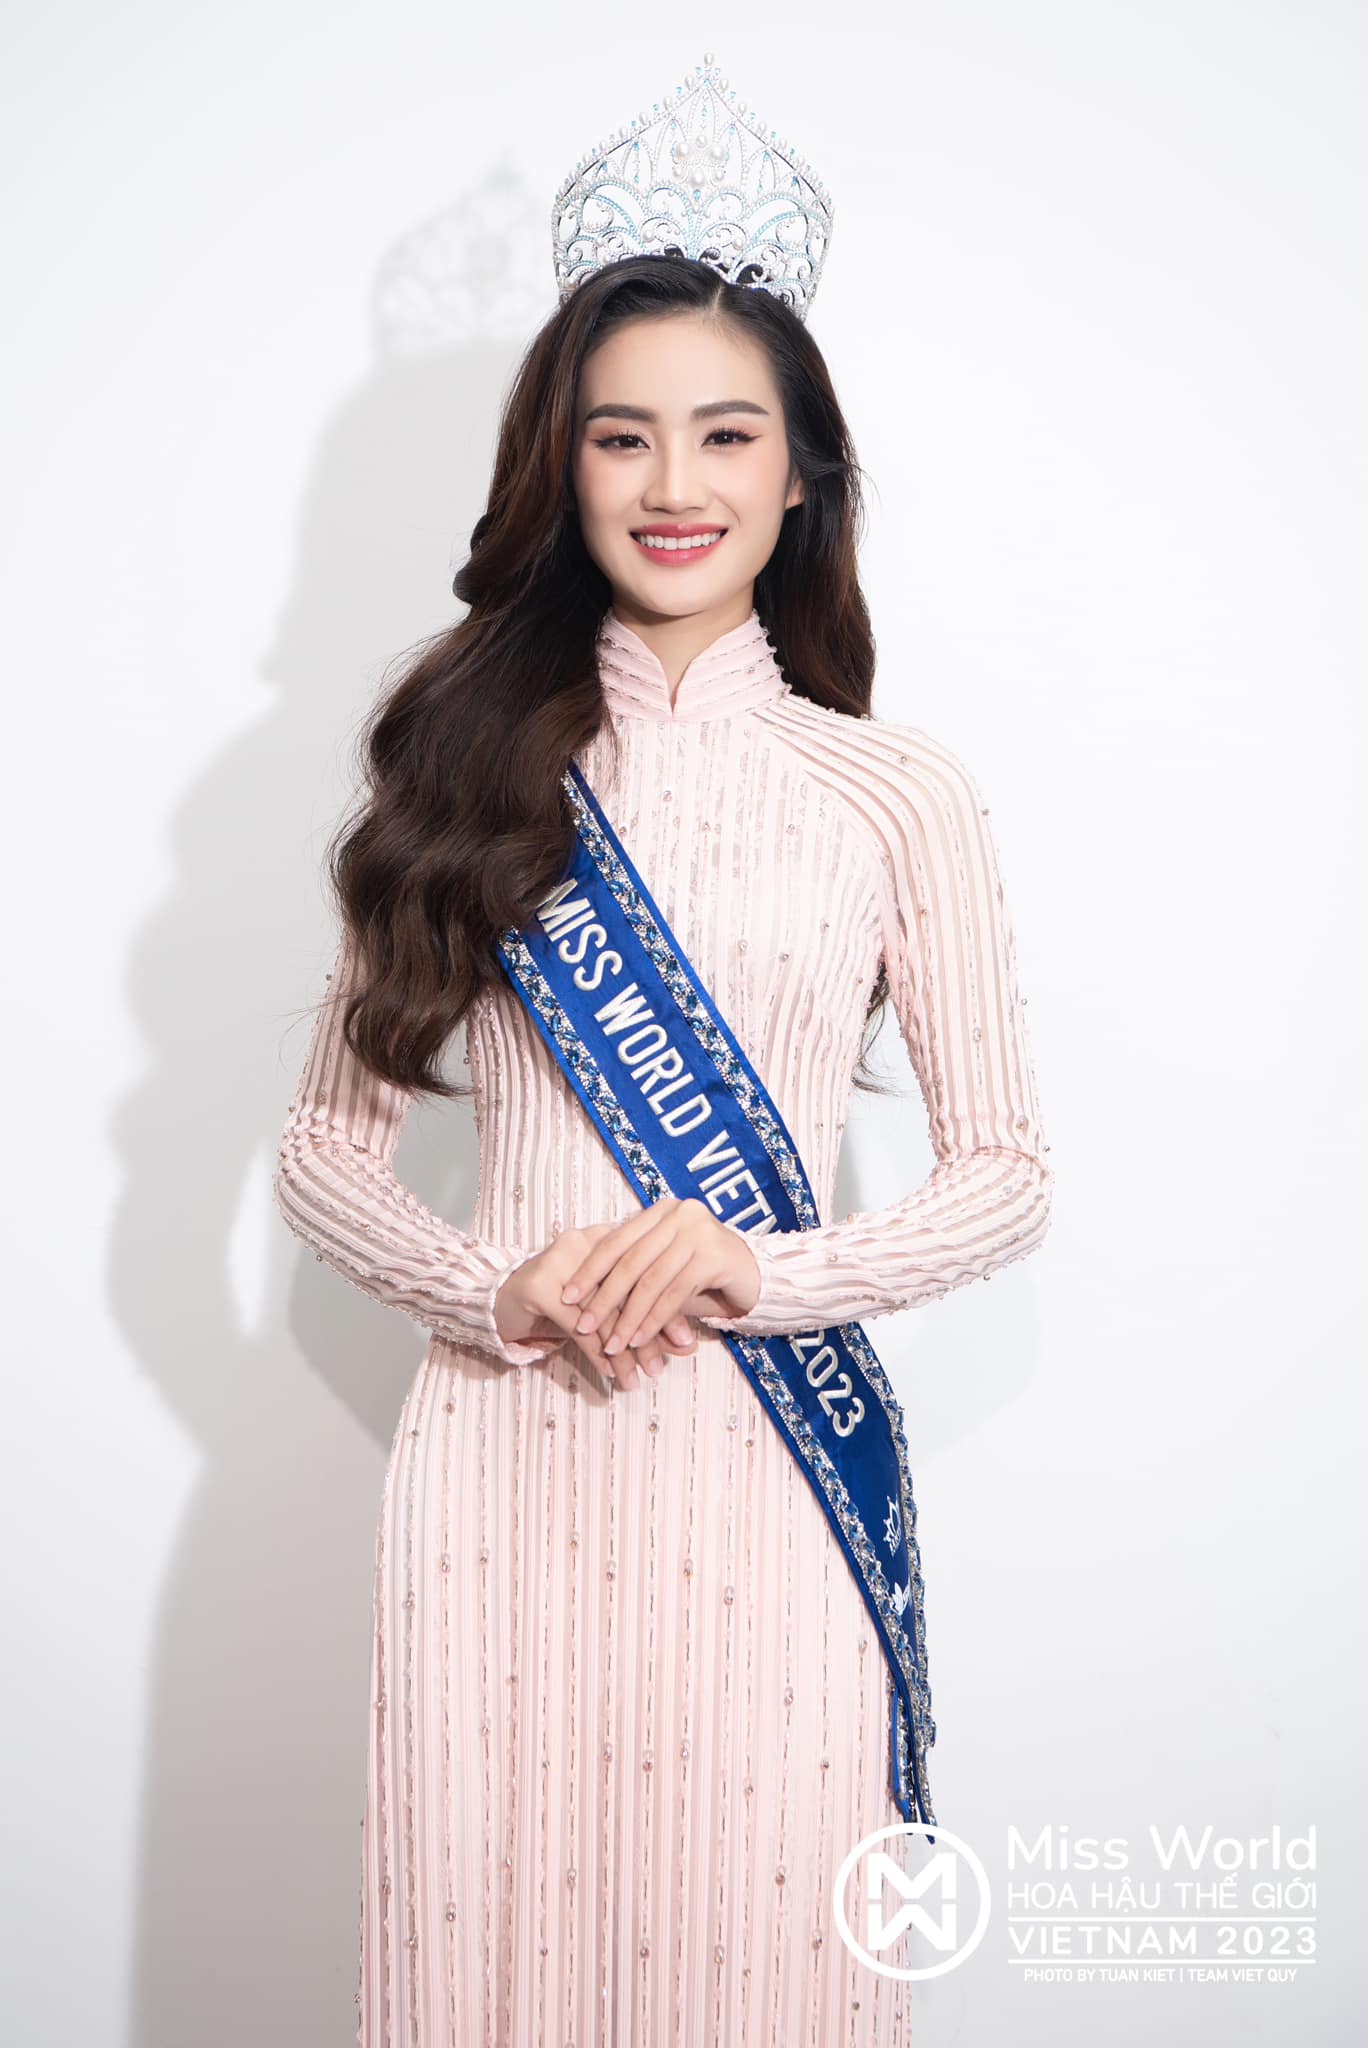 Trong năm 2023, có bao nhiêu Hoa hậu đăng quang tại các cuộc thi nhan sắc ở Việt Nam? - ảnh 2